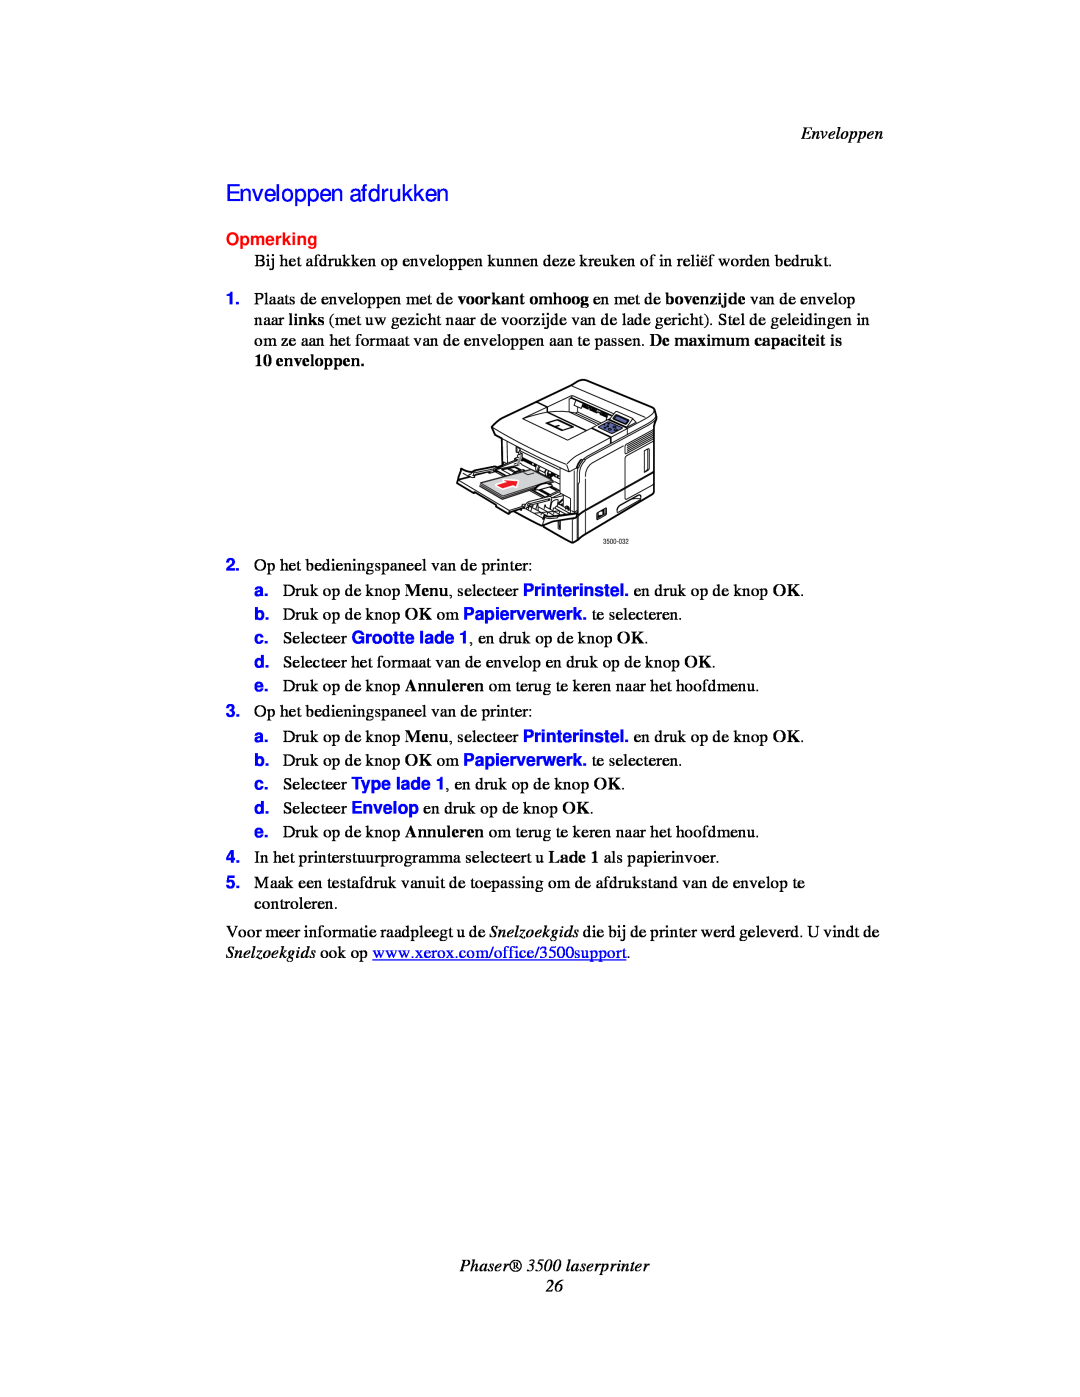 Xerox manual Enveloppen afdrukken, Opmerking, Phaser 3500 laserprinter 